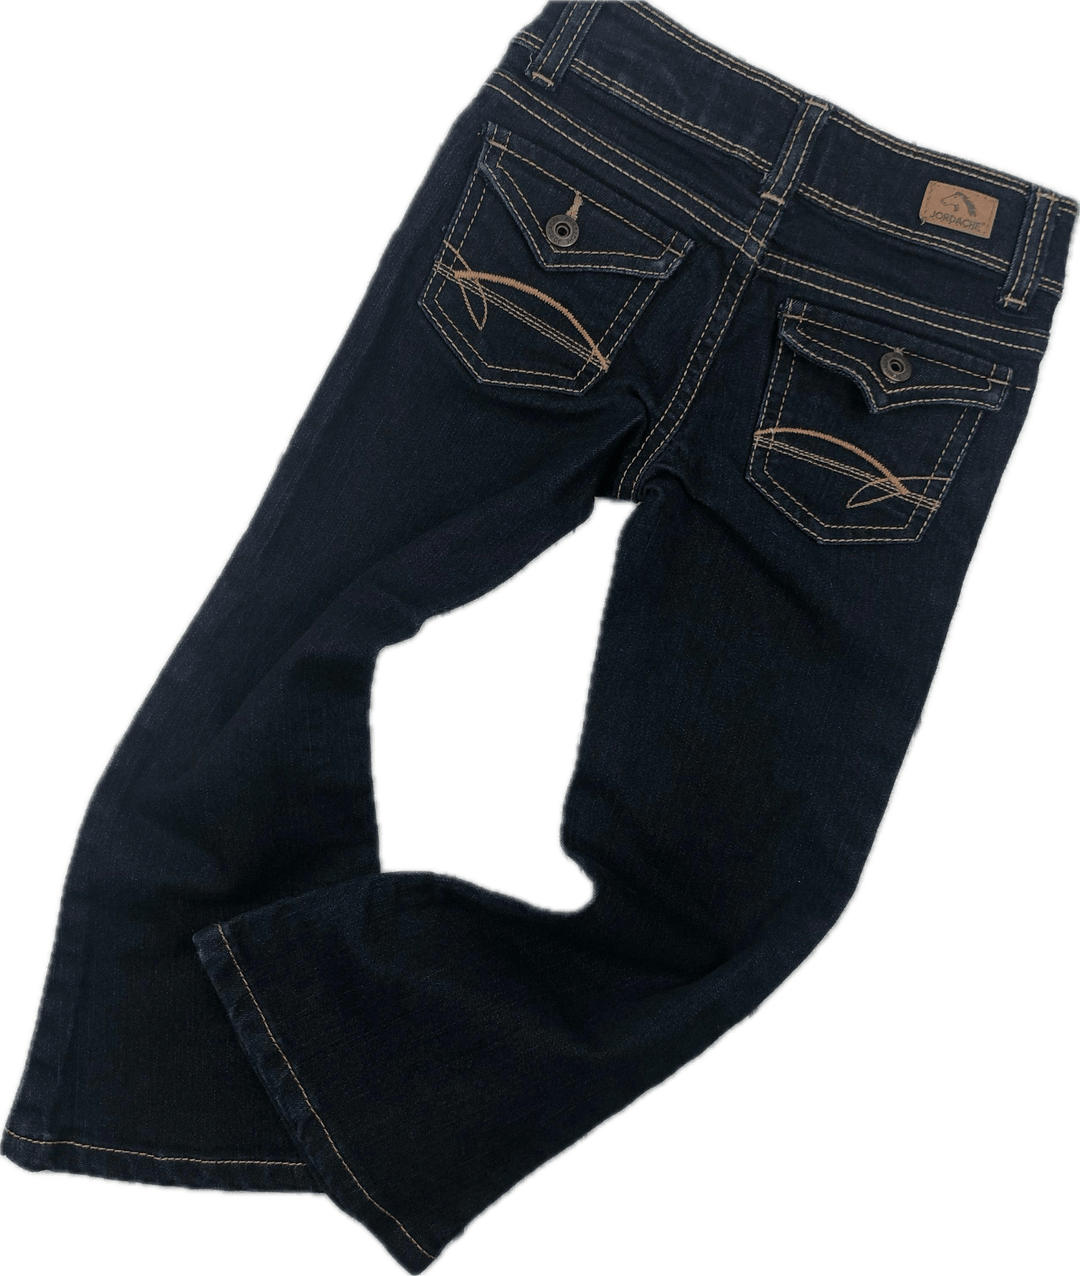 Jordache Girls 'Flare' Jeans - Size 4 - Jean Pool